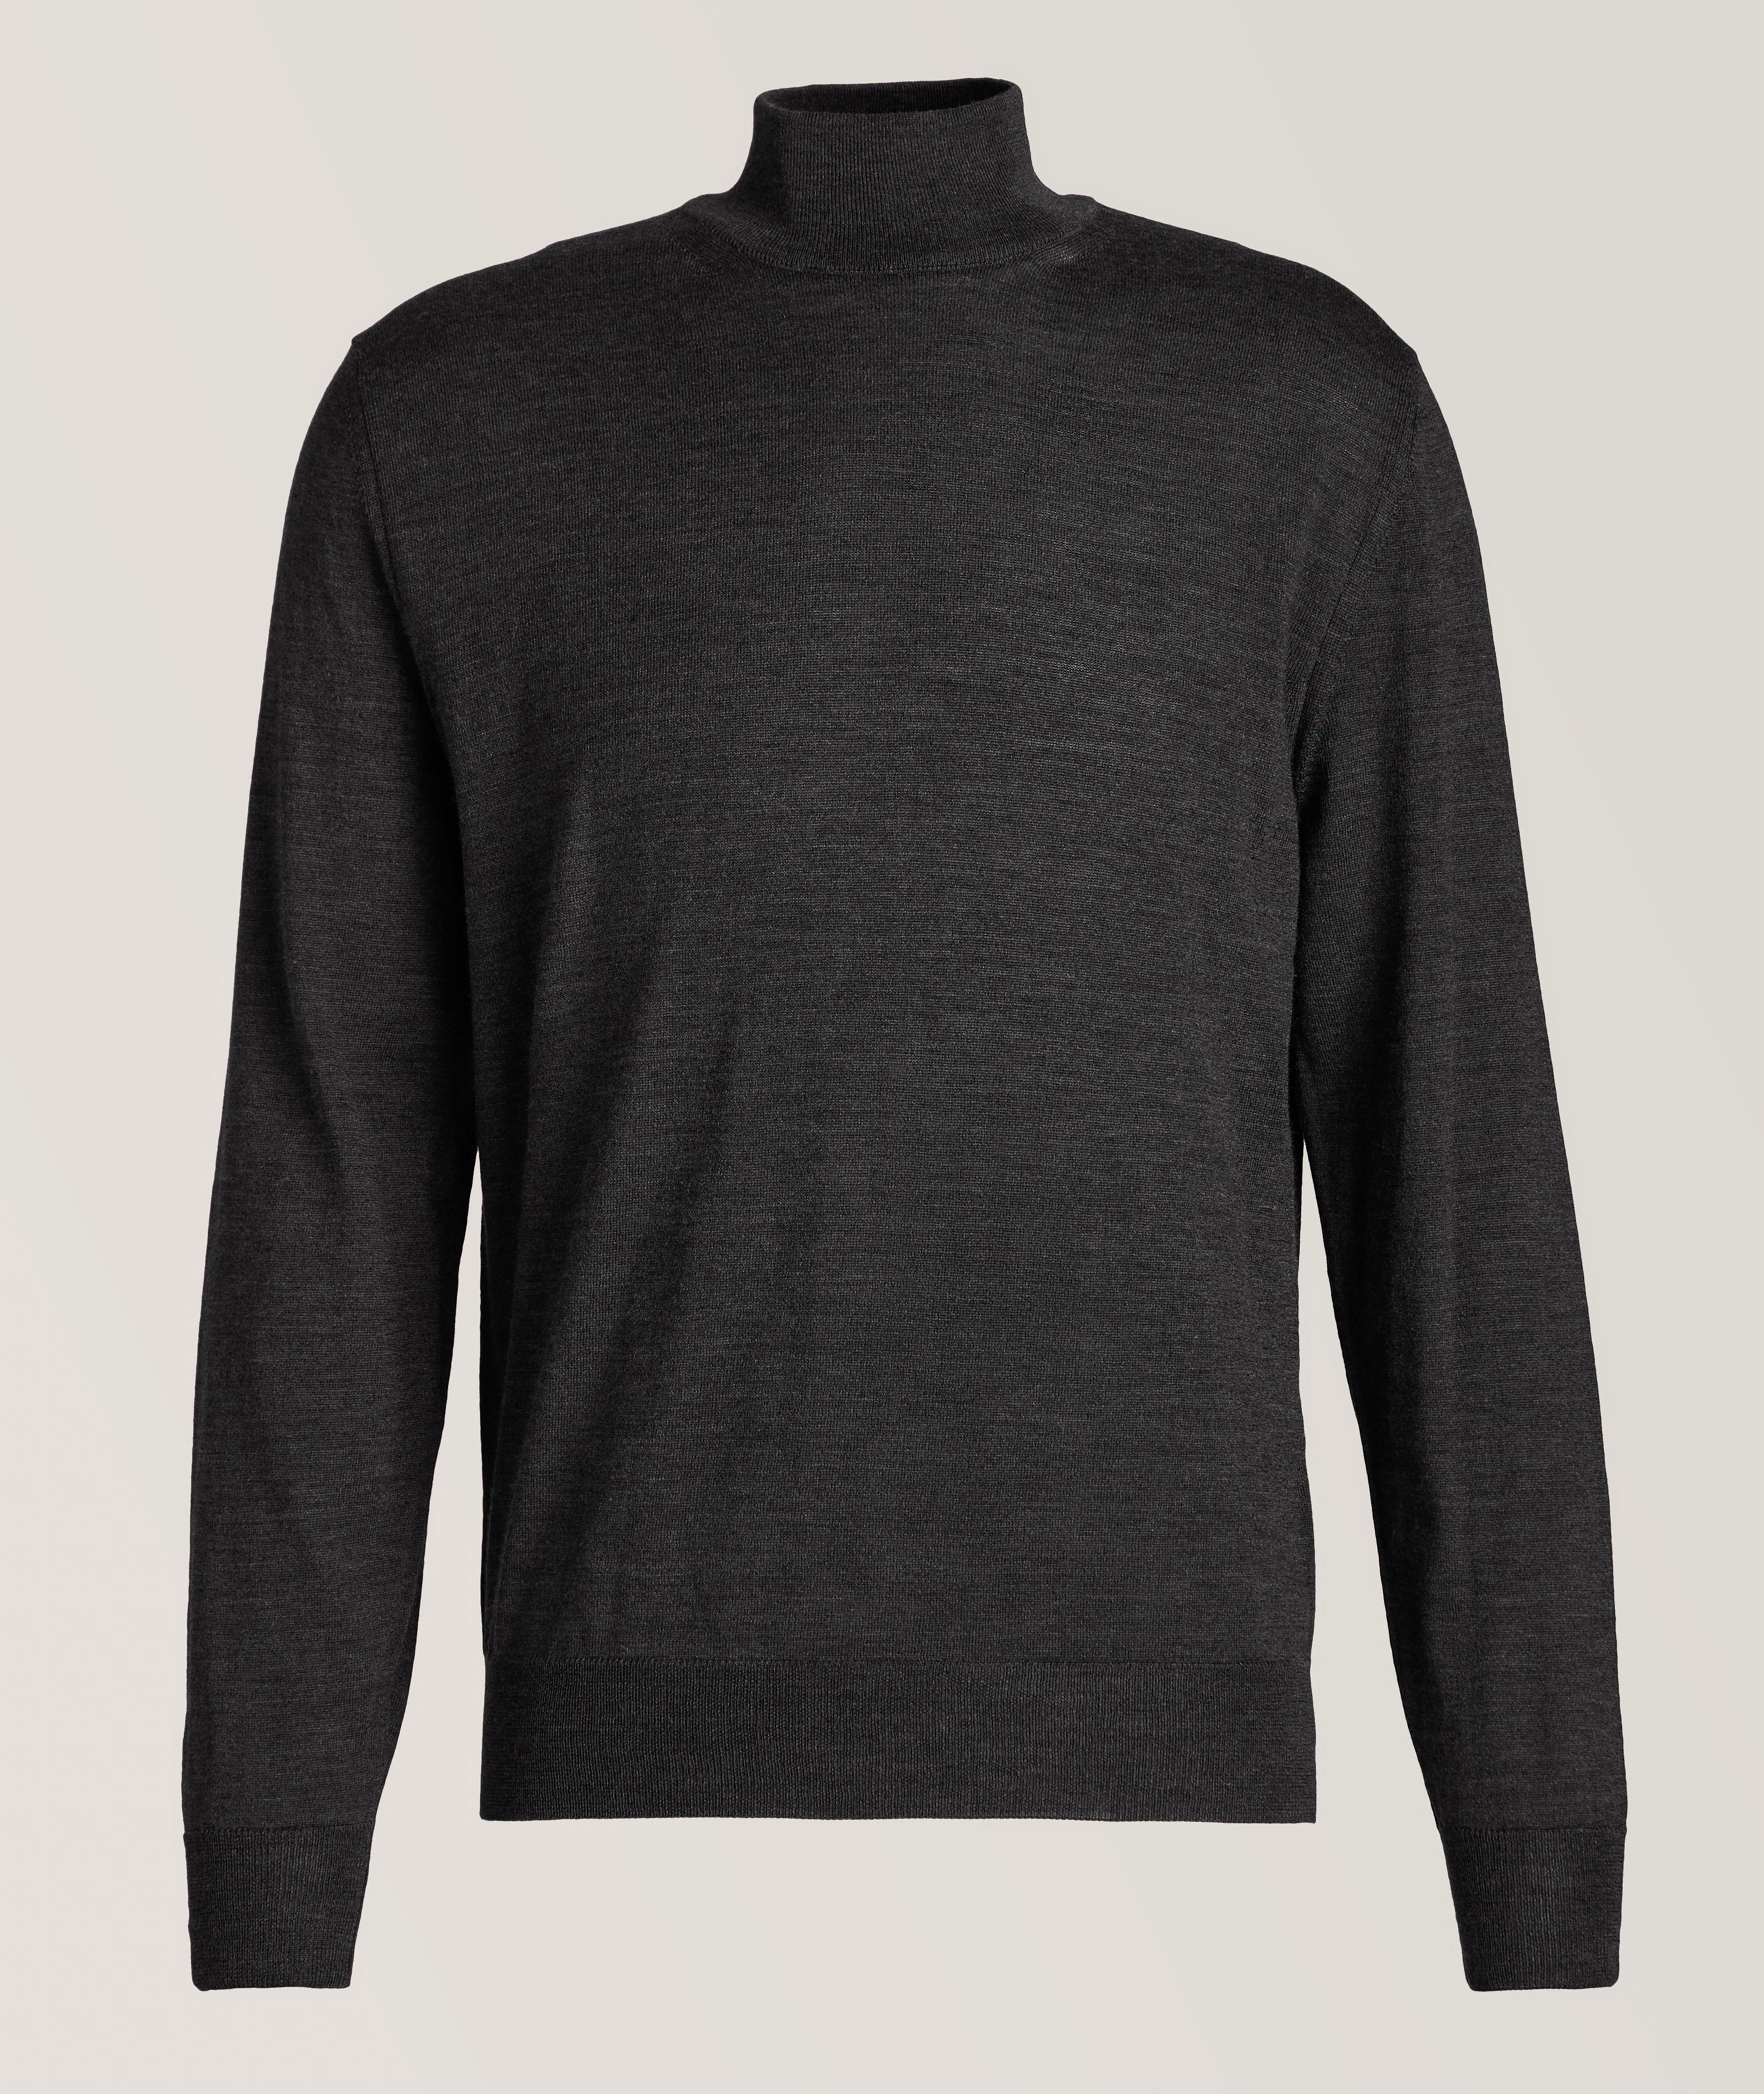 Canali Merino Wool Mock Neck Sweater | Sweaters & Knits | Harry Rosen